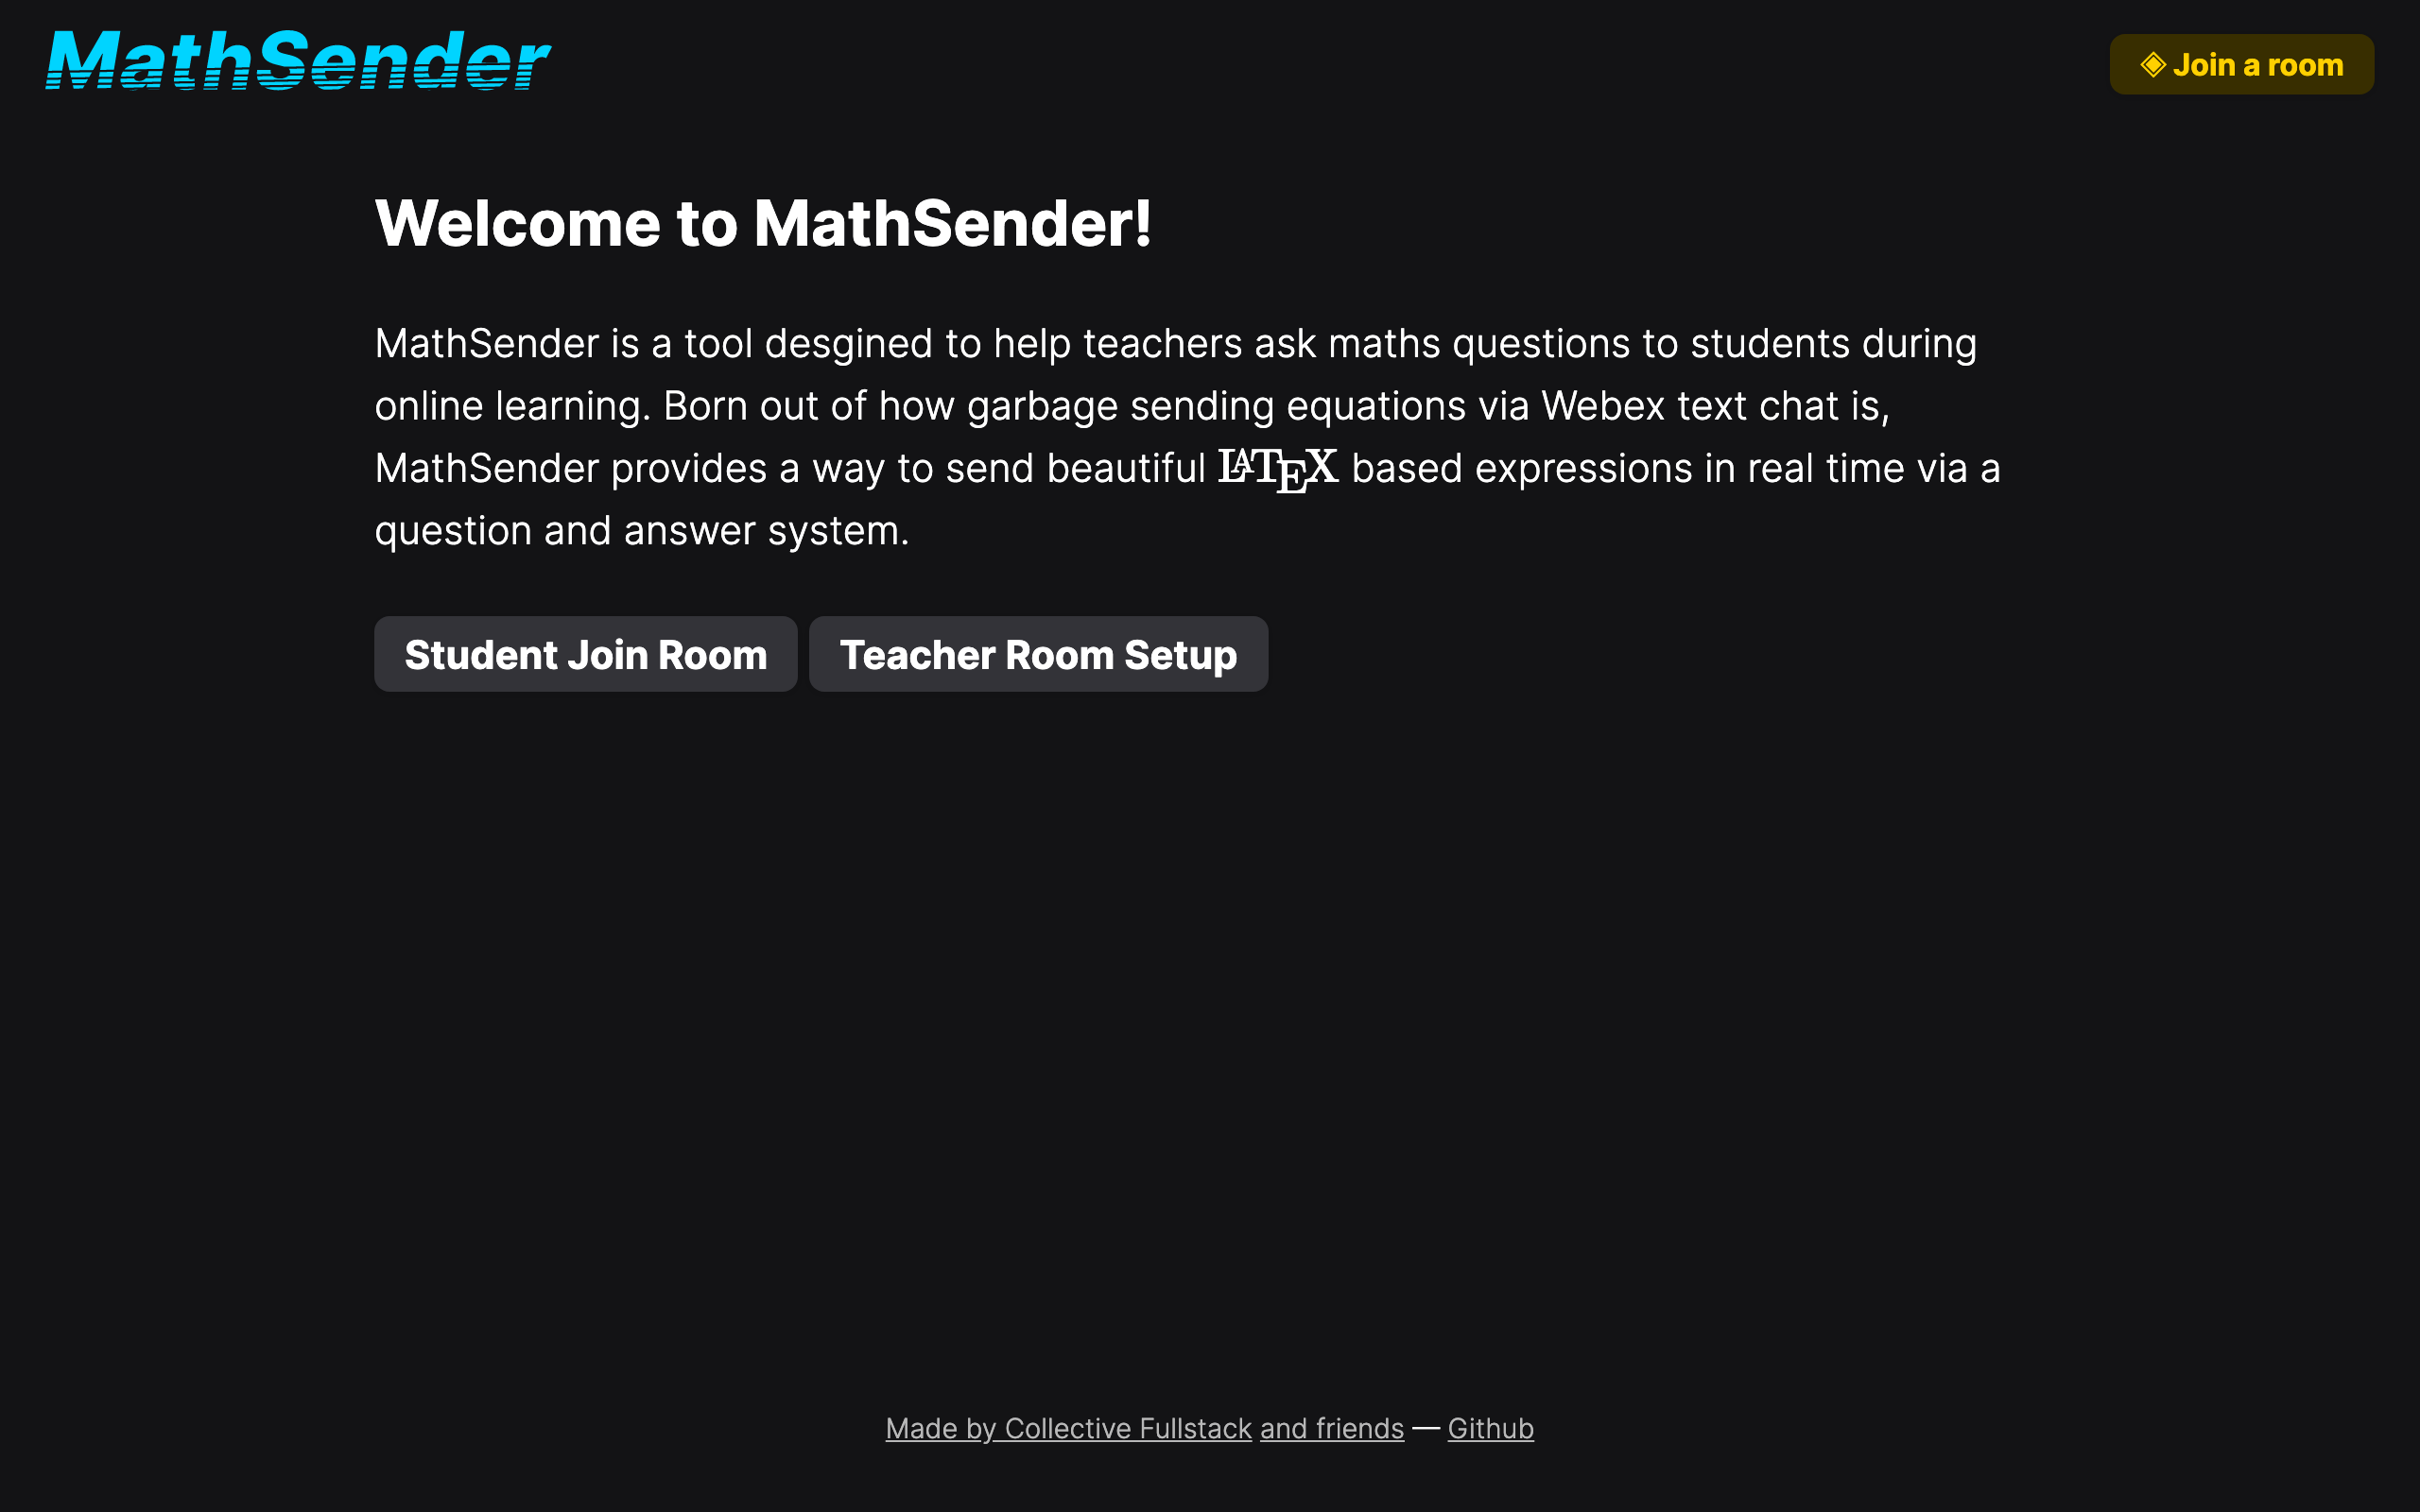 The MathSender homepage